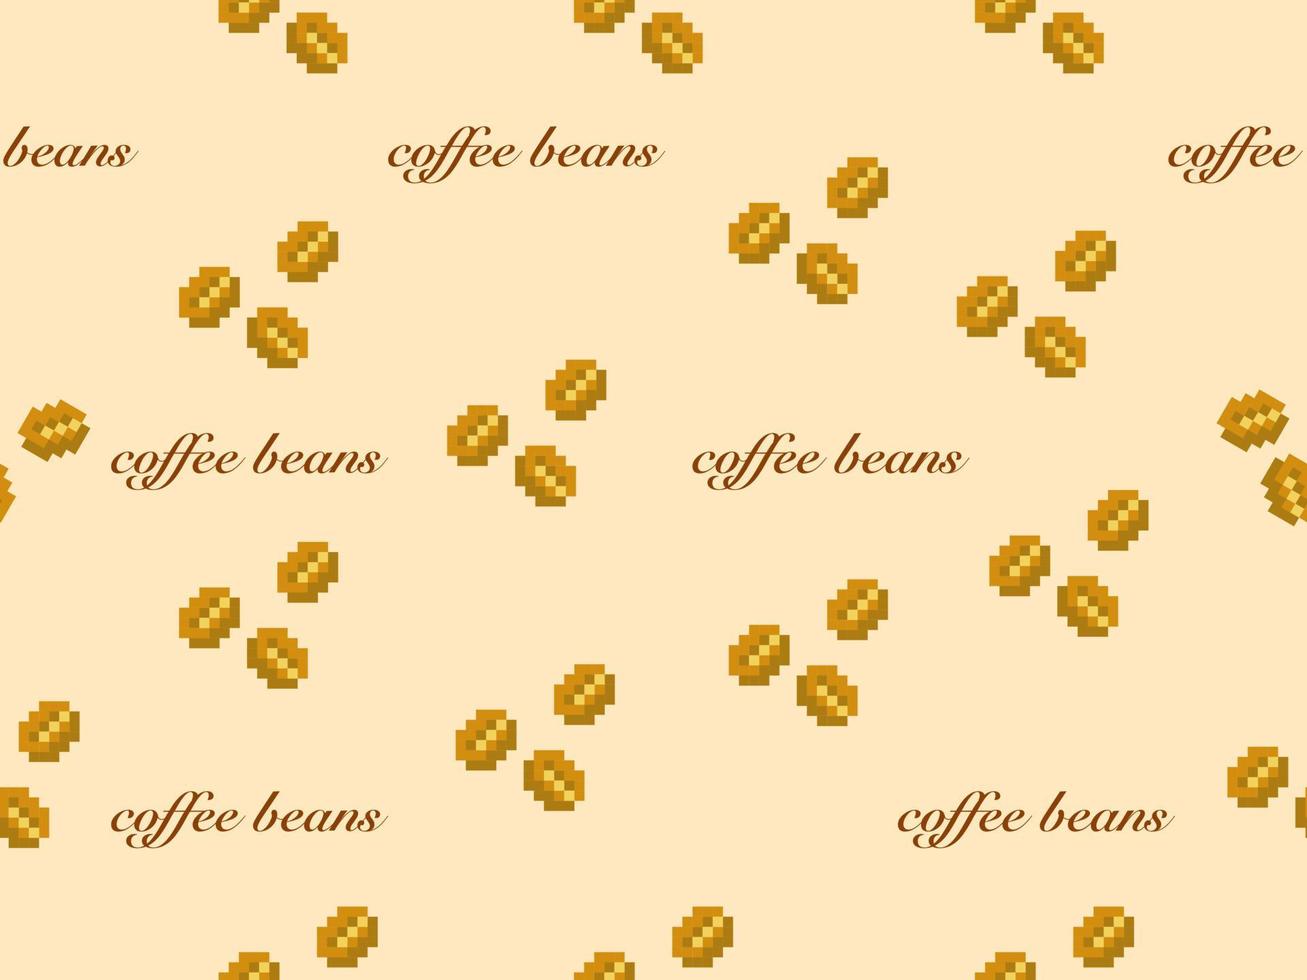 koffie cartoon karakter naadloos patroon op gele background.pixel stijl vector